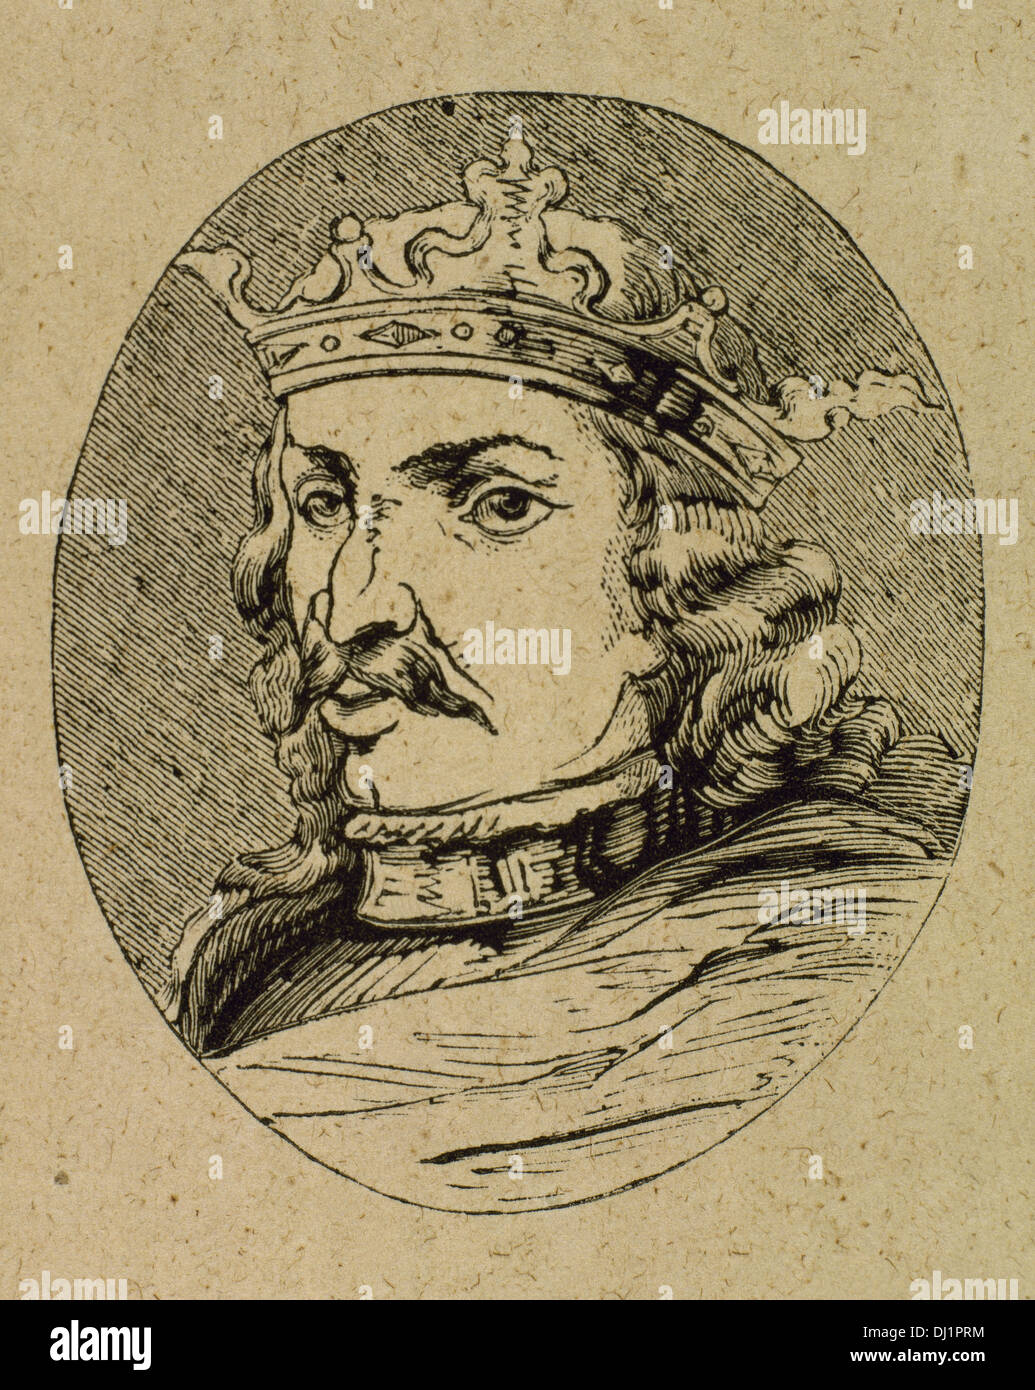 Heinrich IV. von Kastilien (1425-1474). König der Krone von Kastilien. Spitznamen der Impotent. Gravur. Stockfoto